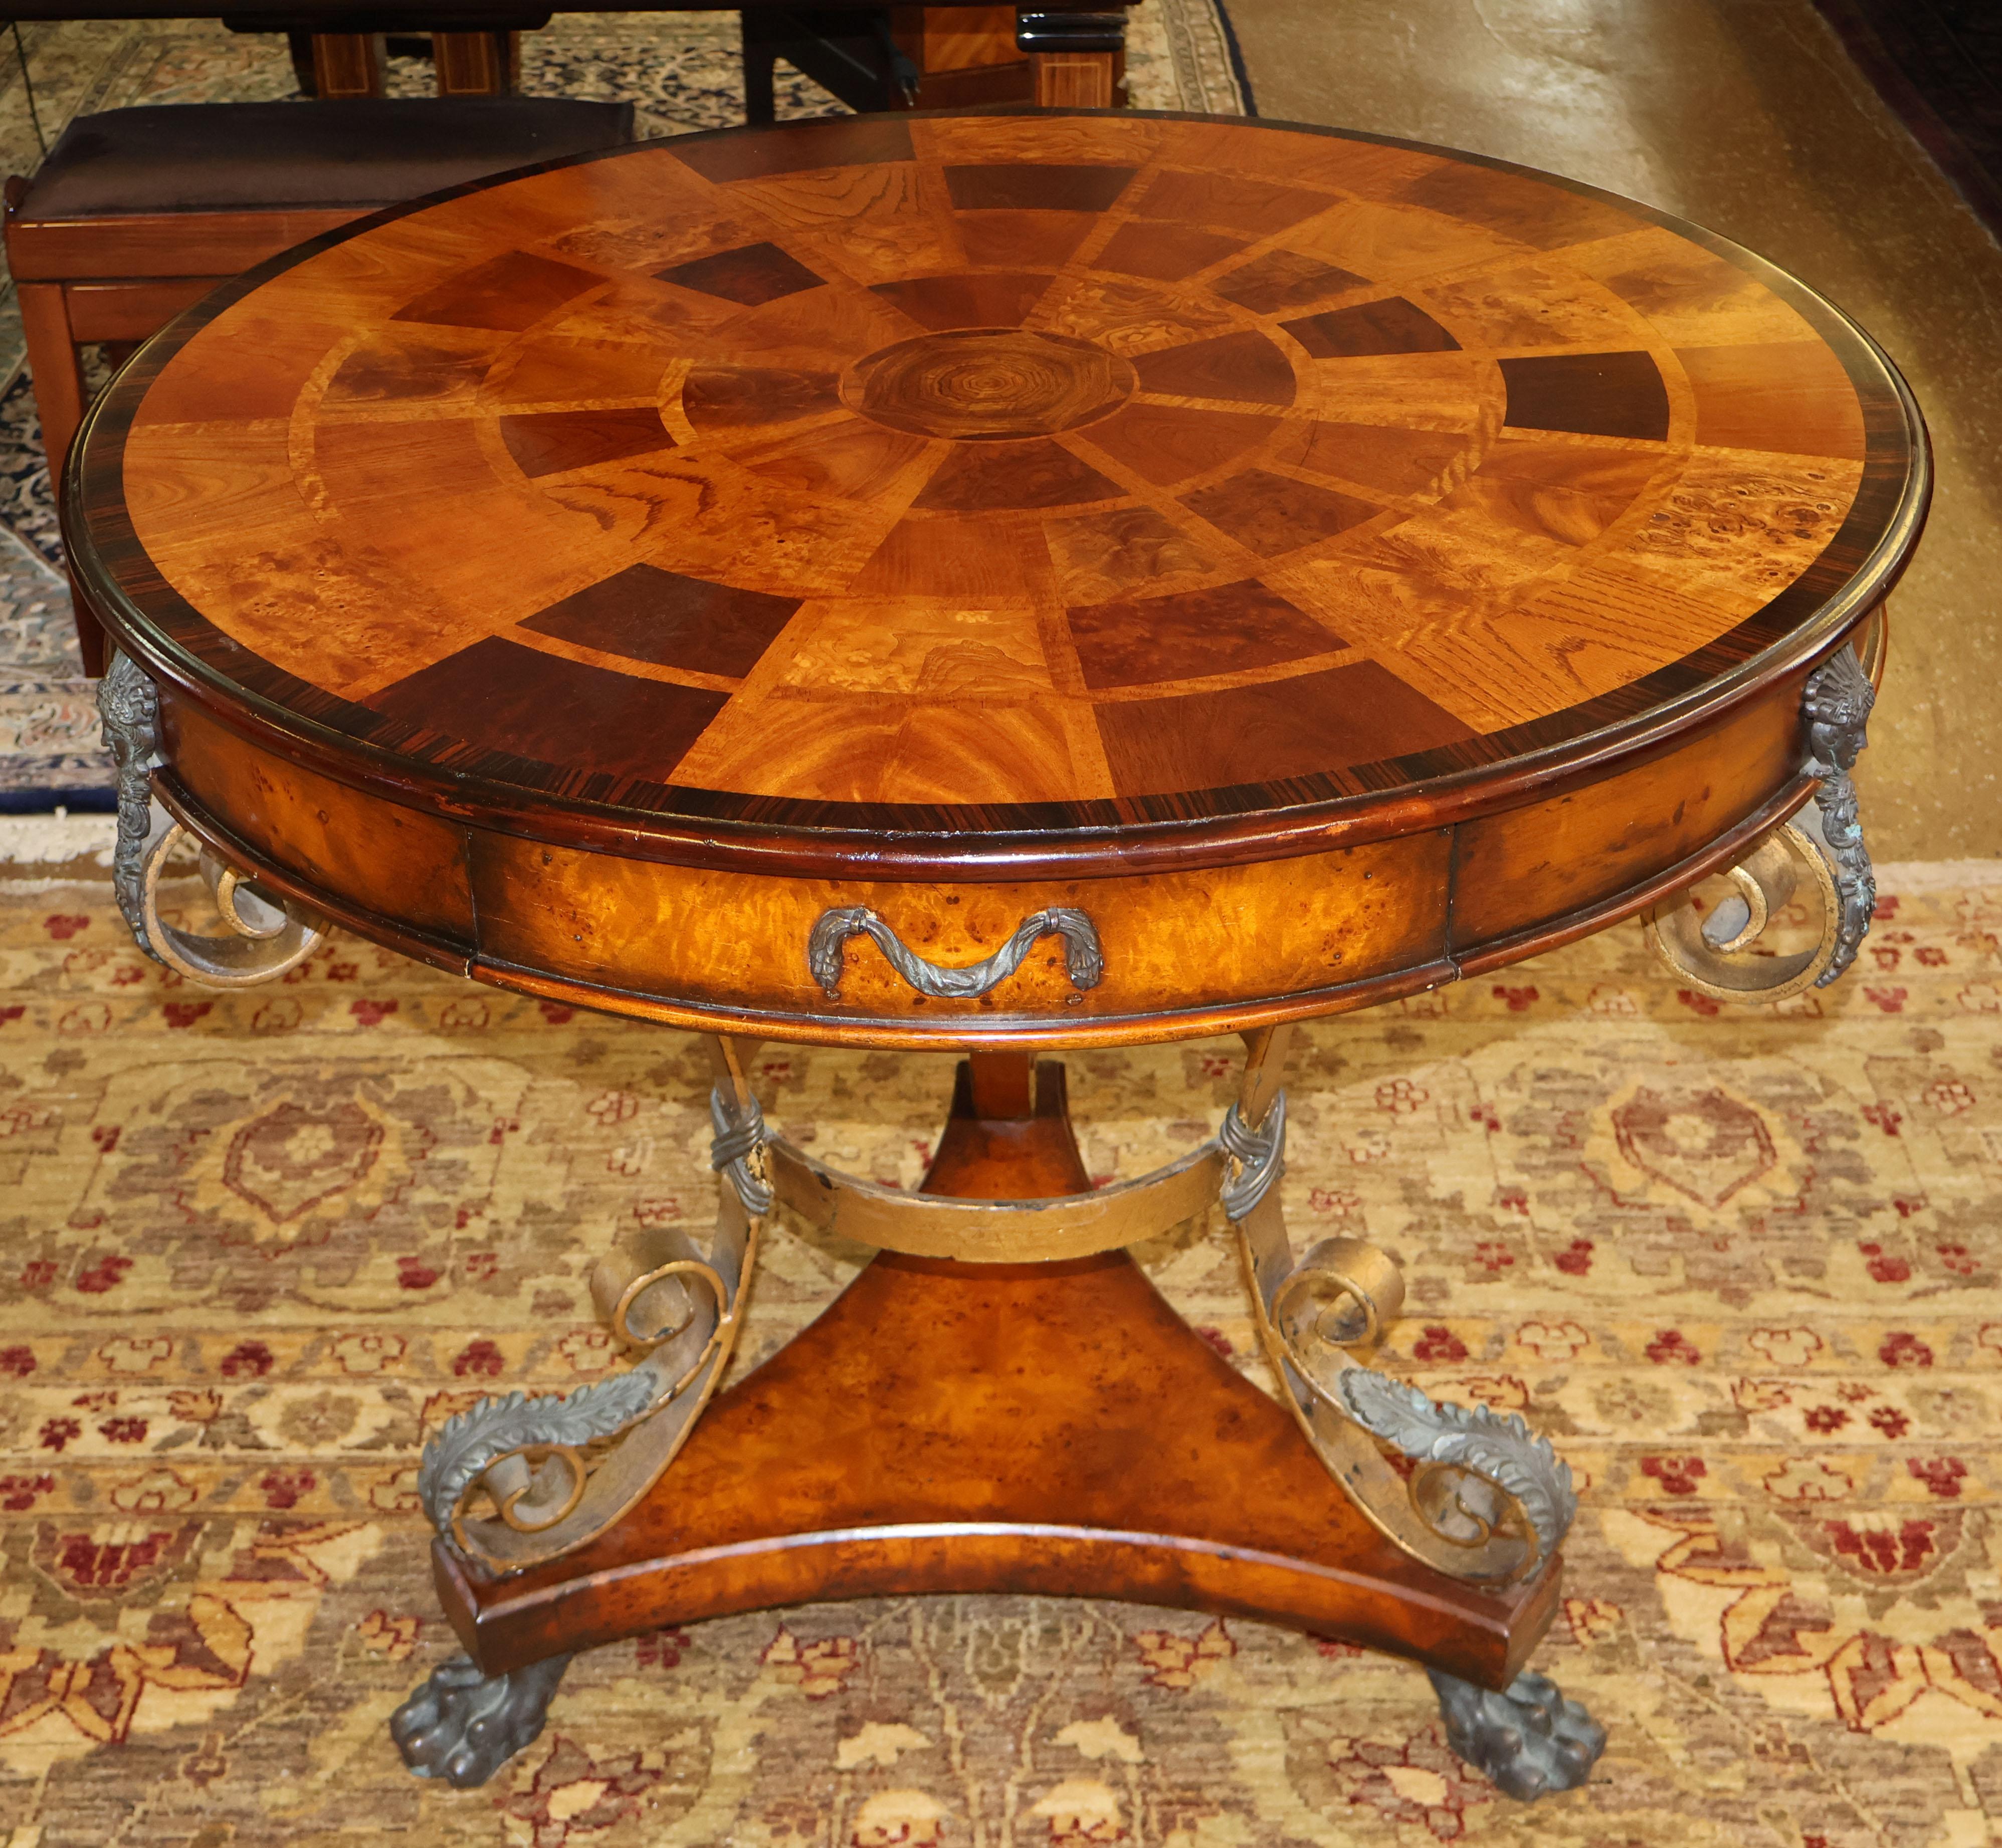 Theodore Alexander - Table centrale à tambour rond en fer caryatide et loupe de noyer incrustée

Dimensions : 31